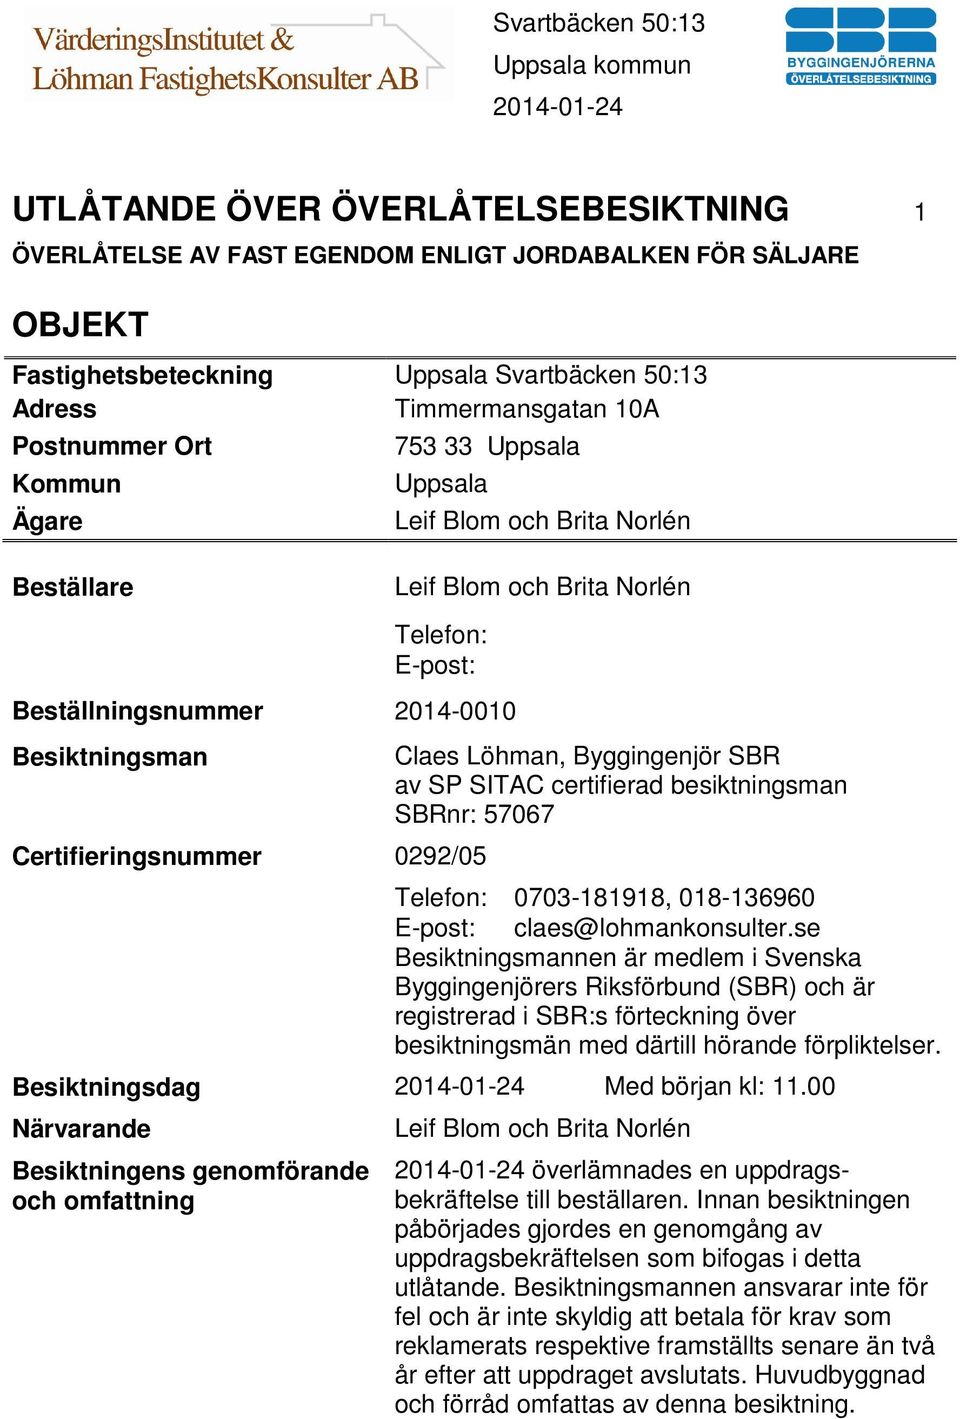 Löhman, Byggingenjör SBR av SP SITAC certifierad besiktningsman SBRnr: 57067 Telefon: 0703-181918, 018-136960 E-post: claes@lohmankonsulter.